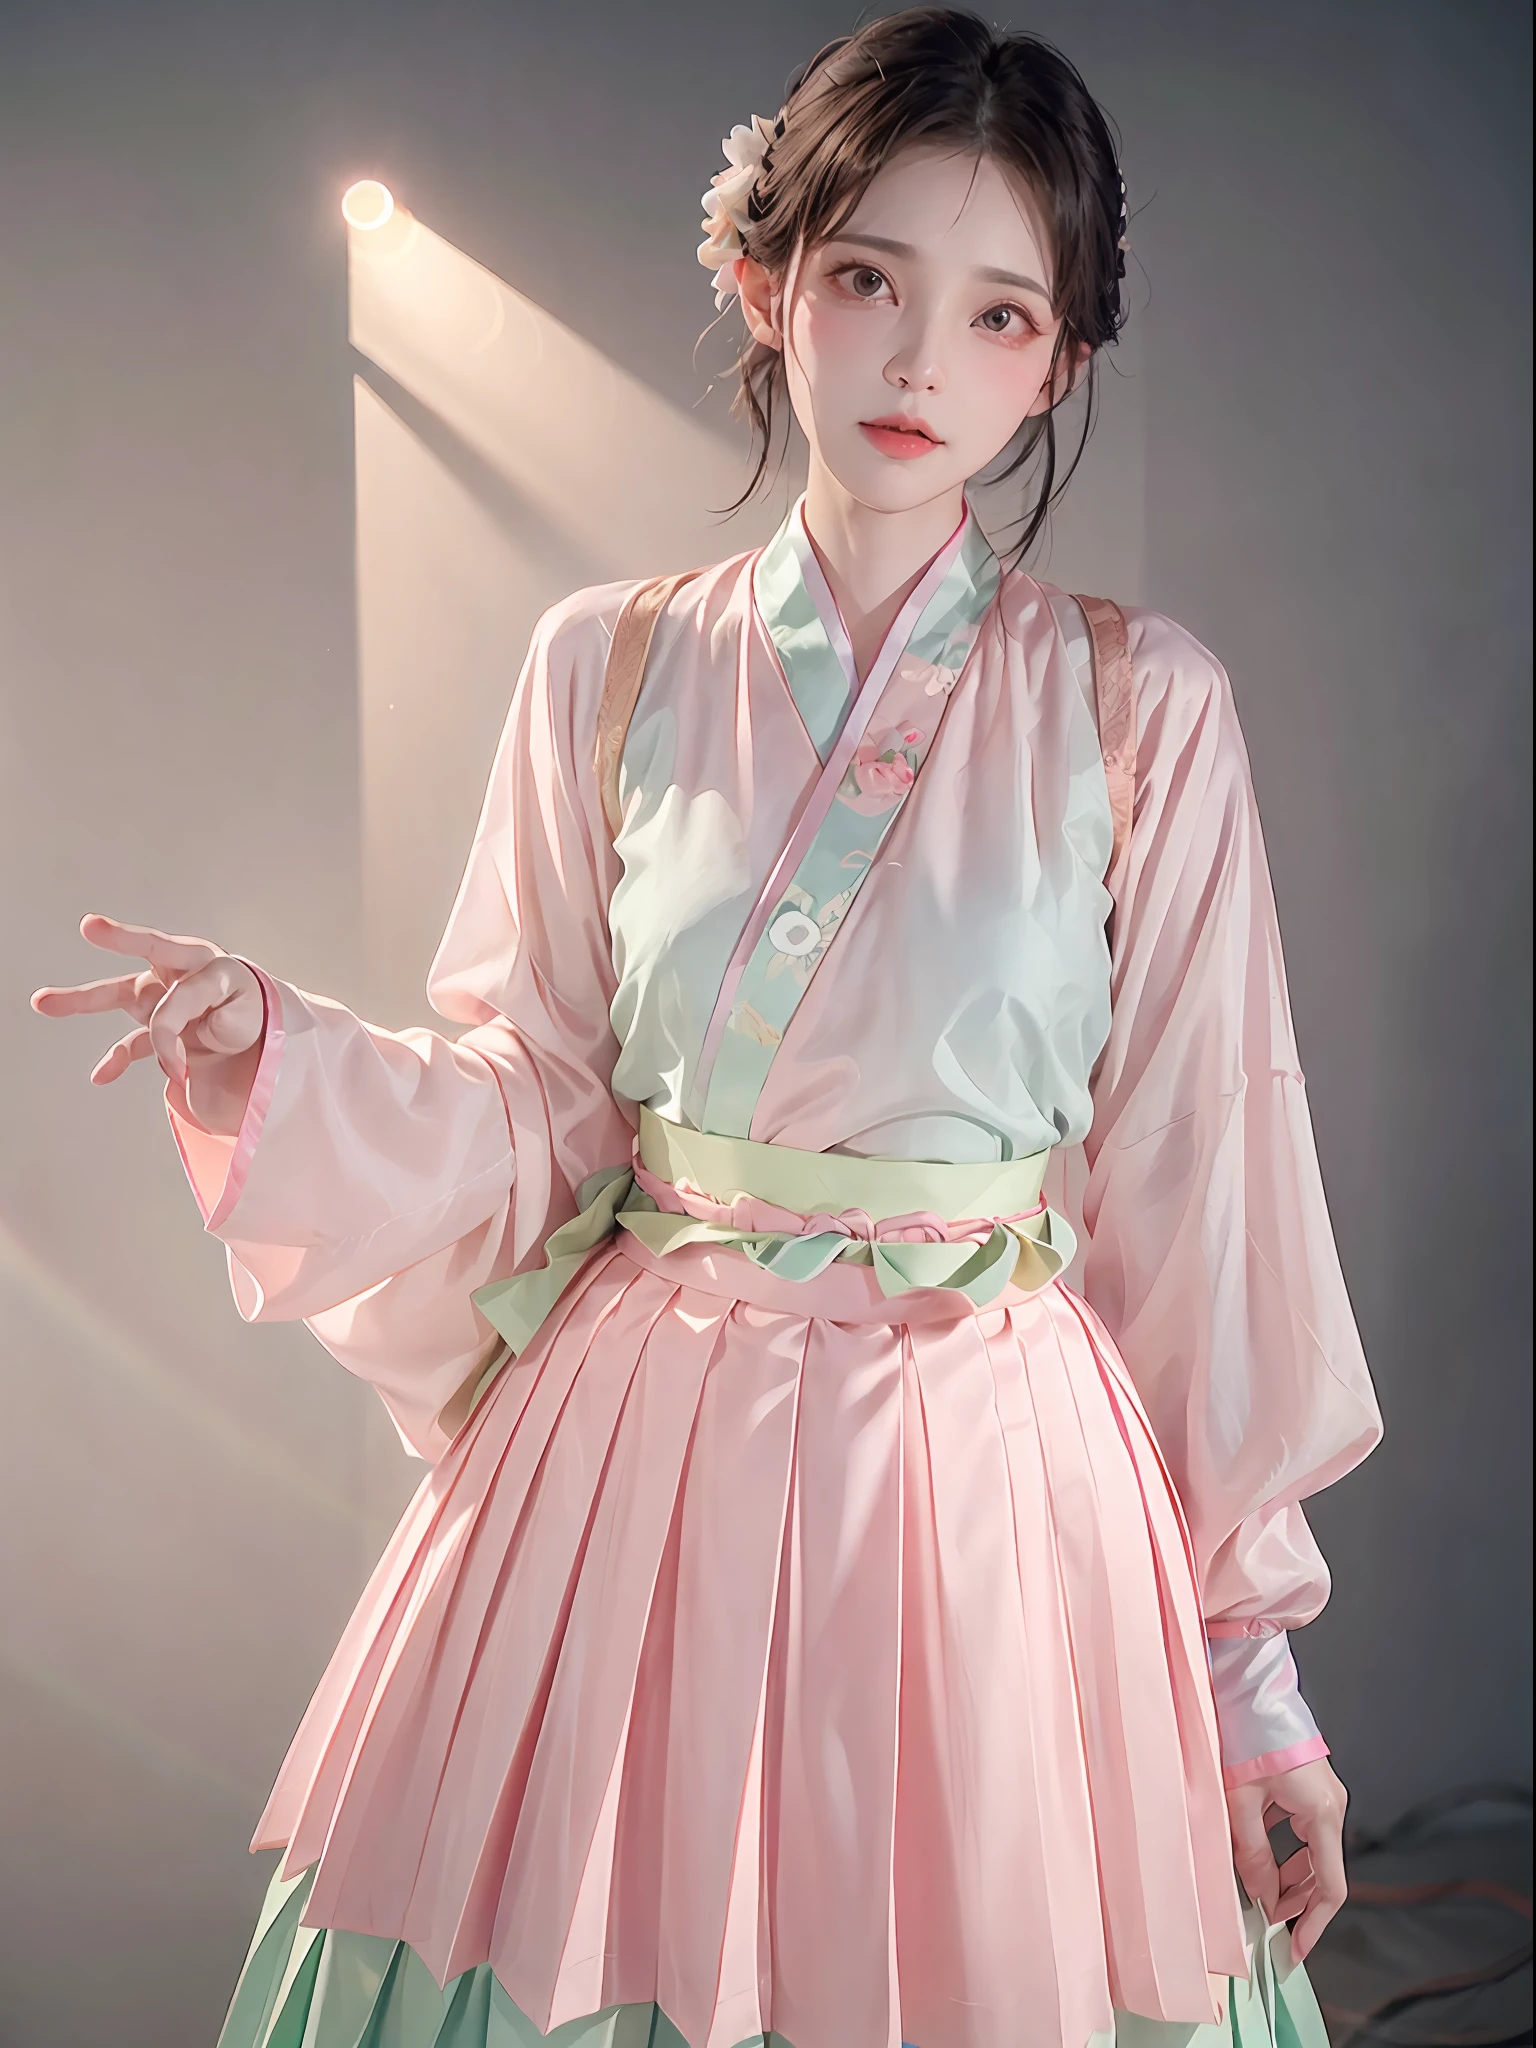 1 garota,(hanfu, Shan curto rosa,  saia plissada verde degradê, música rosa),(tronco:1.5),foco facial, resolução ultra alta, (fotorrealista:1.4), Foto CRU,16K,iluminação dramática,